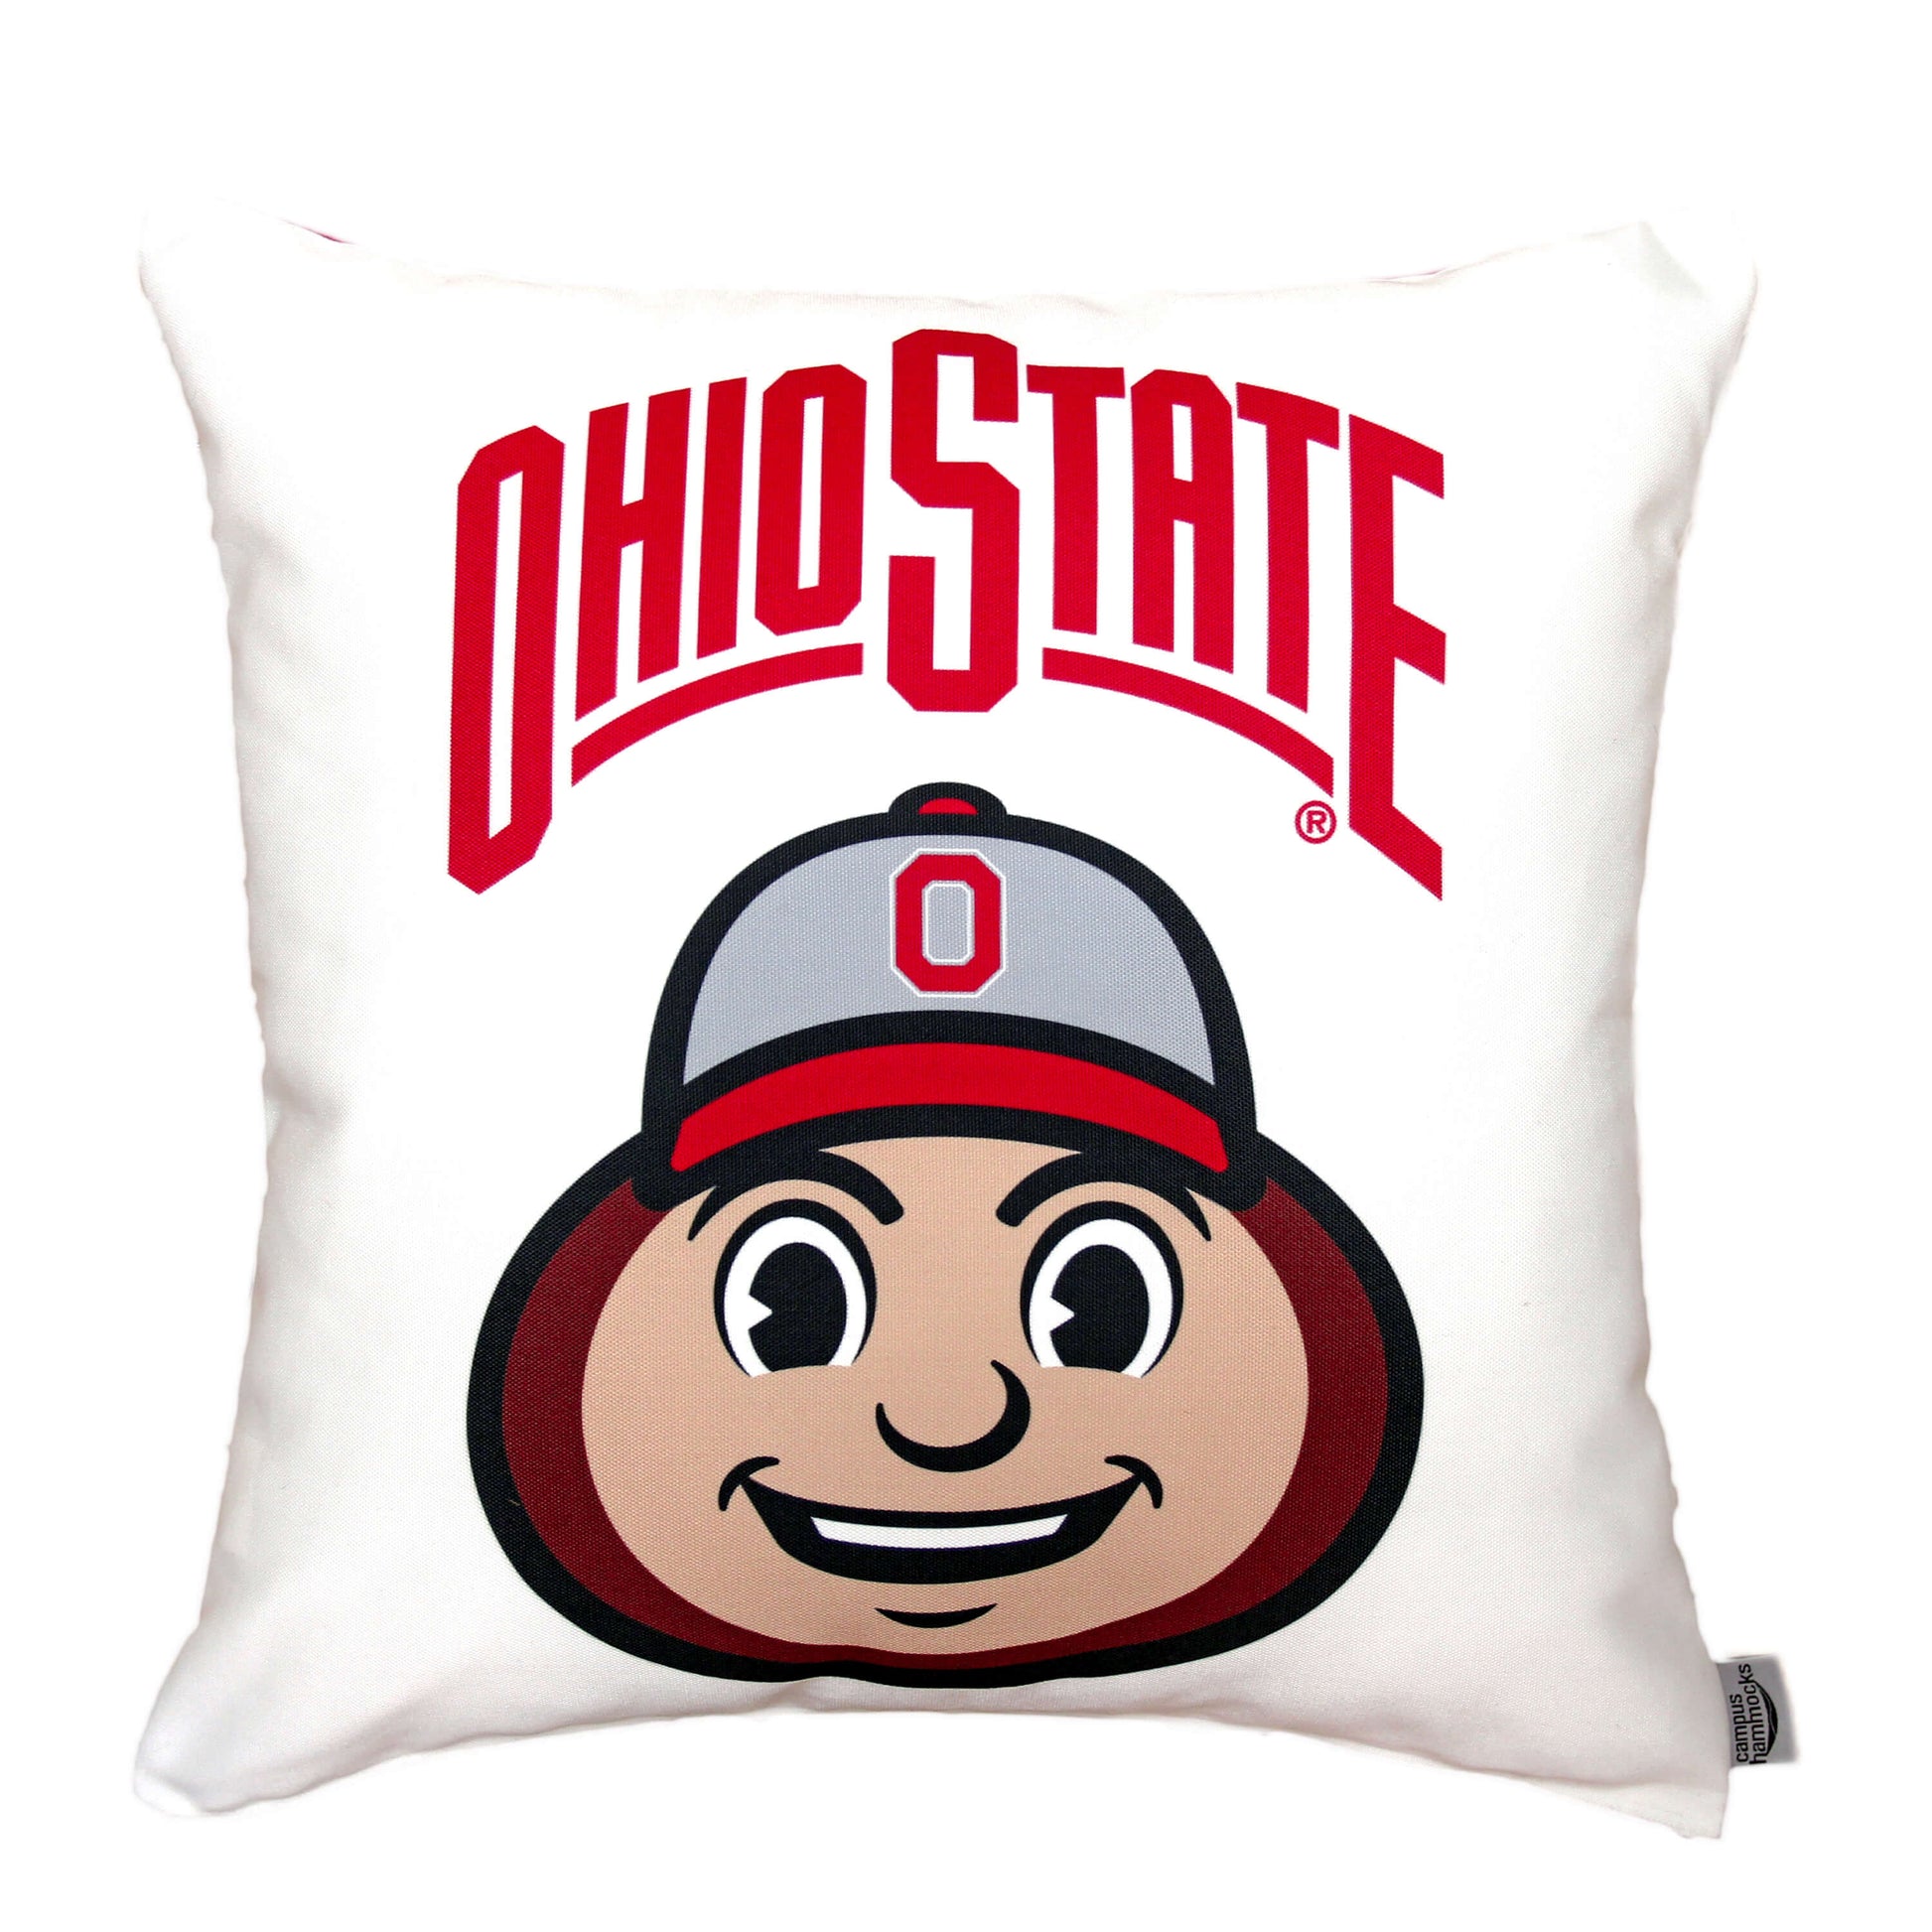 ohio state Buckeyes mascot pillow Brutus